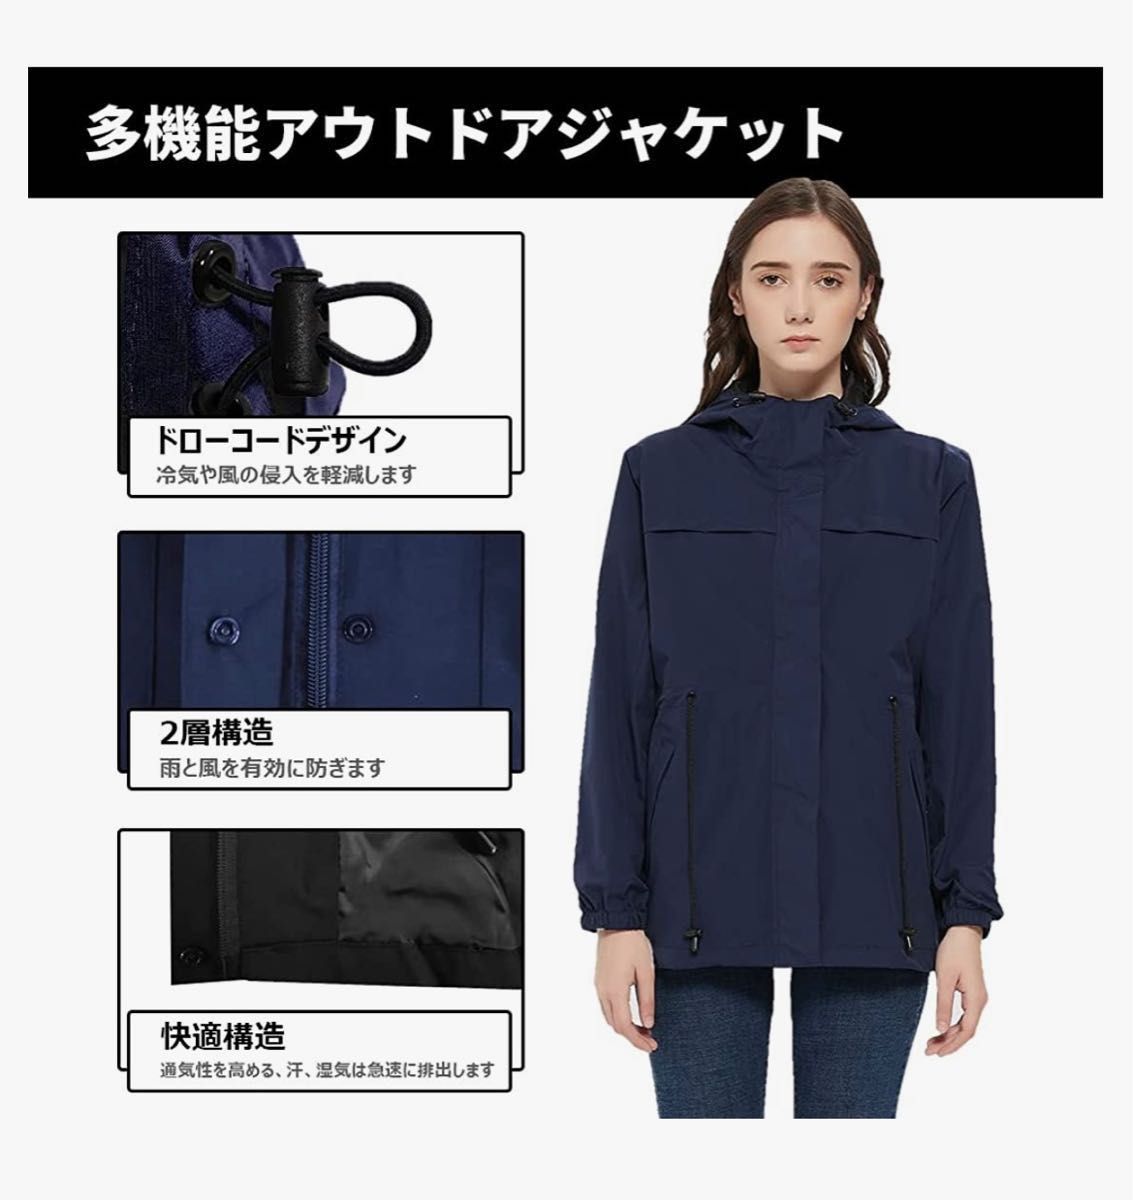 【未使用】ウインドブレーカージャケット レインコート(防寒防水防風)サイズ:2XL